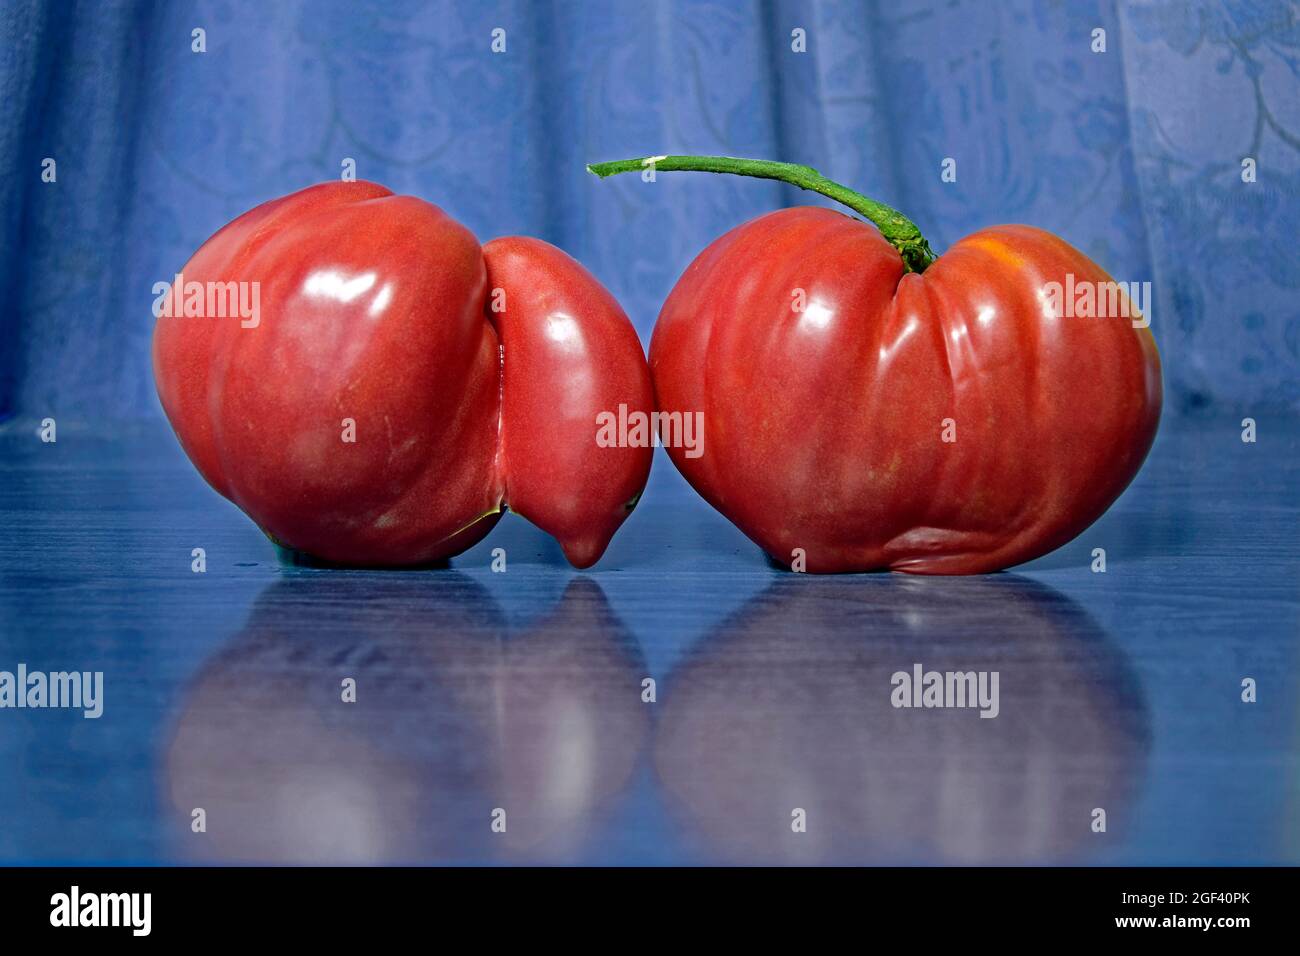 Couple de tomates mûres en forme de cœur, brillantes, rouges, en gros plan dans un environnement bleu flou. Banque D'Images